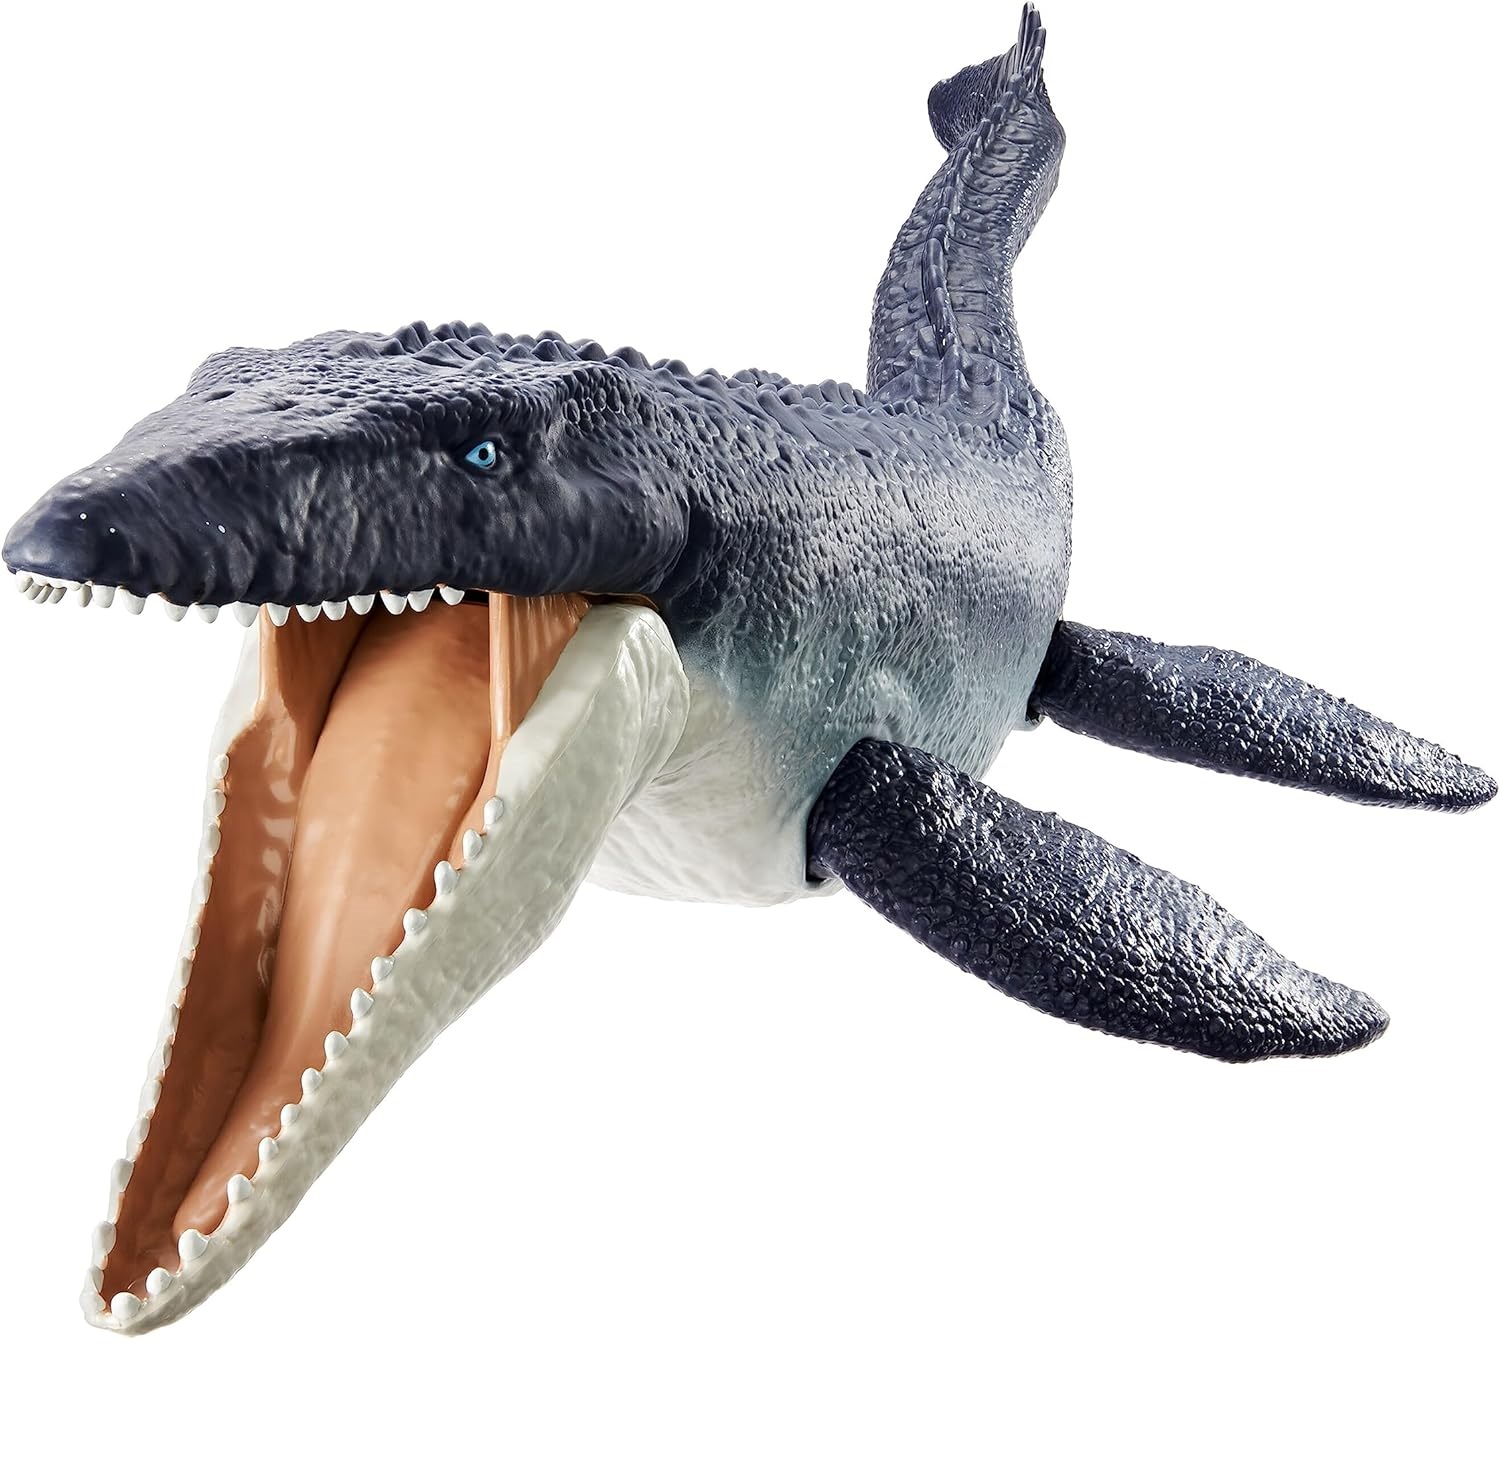 Jurassic world – mosasauro dinosauro giocattolo con articolazioni mobili, per bambini 4+ anni - Jurassic World